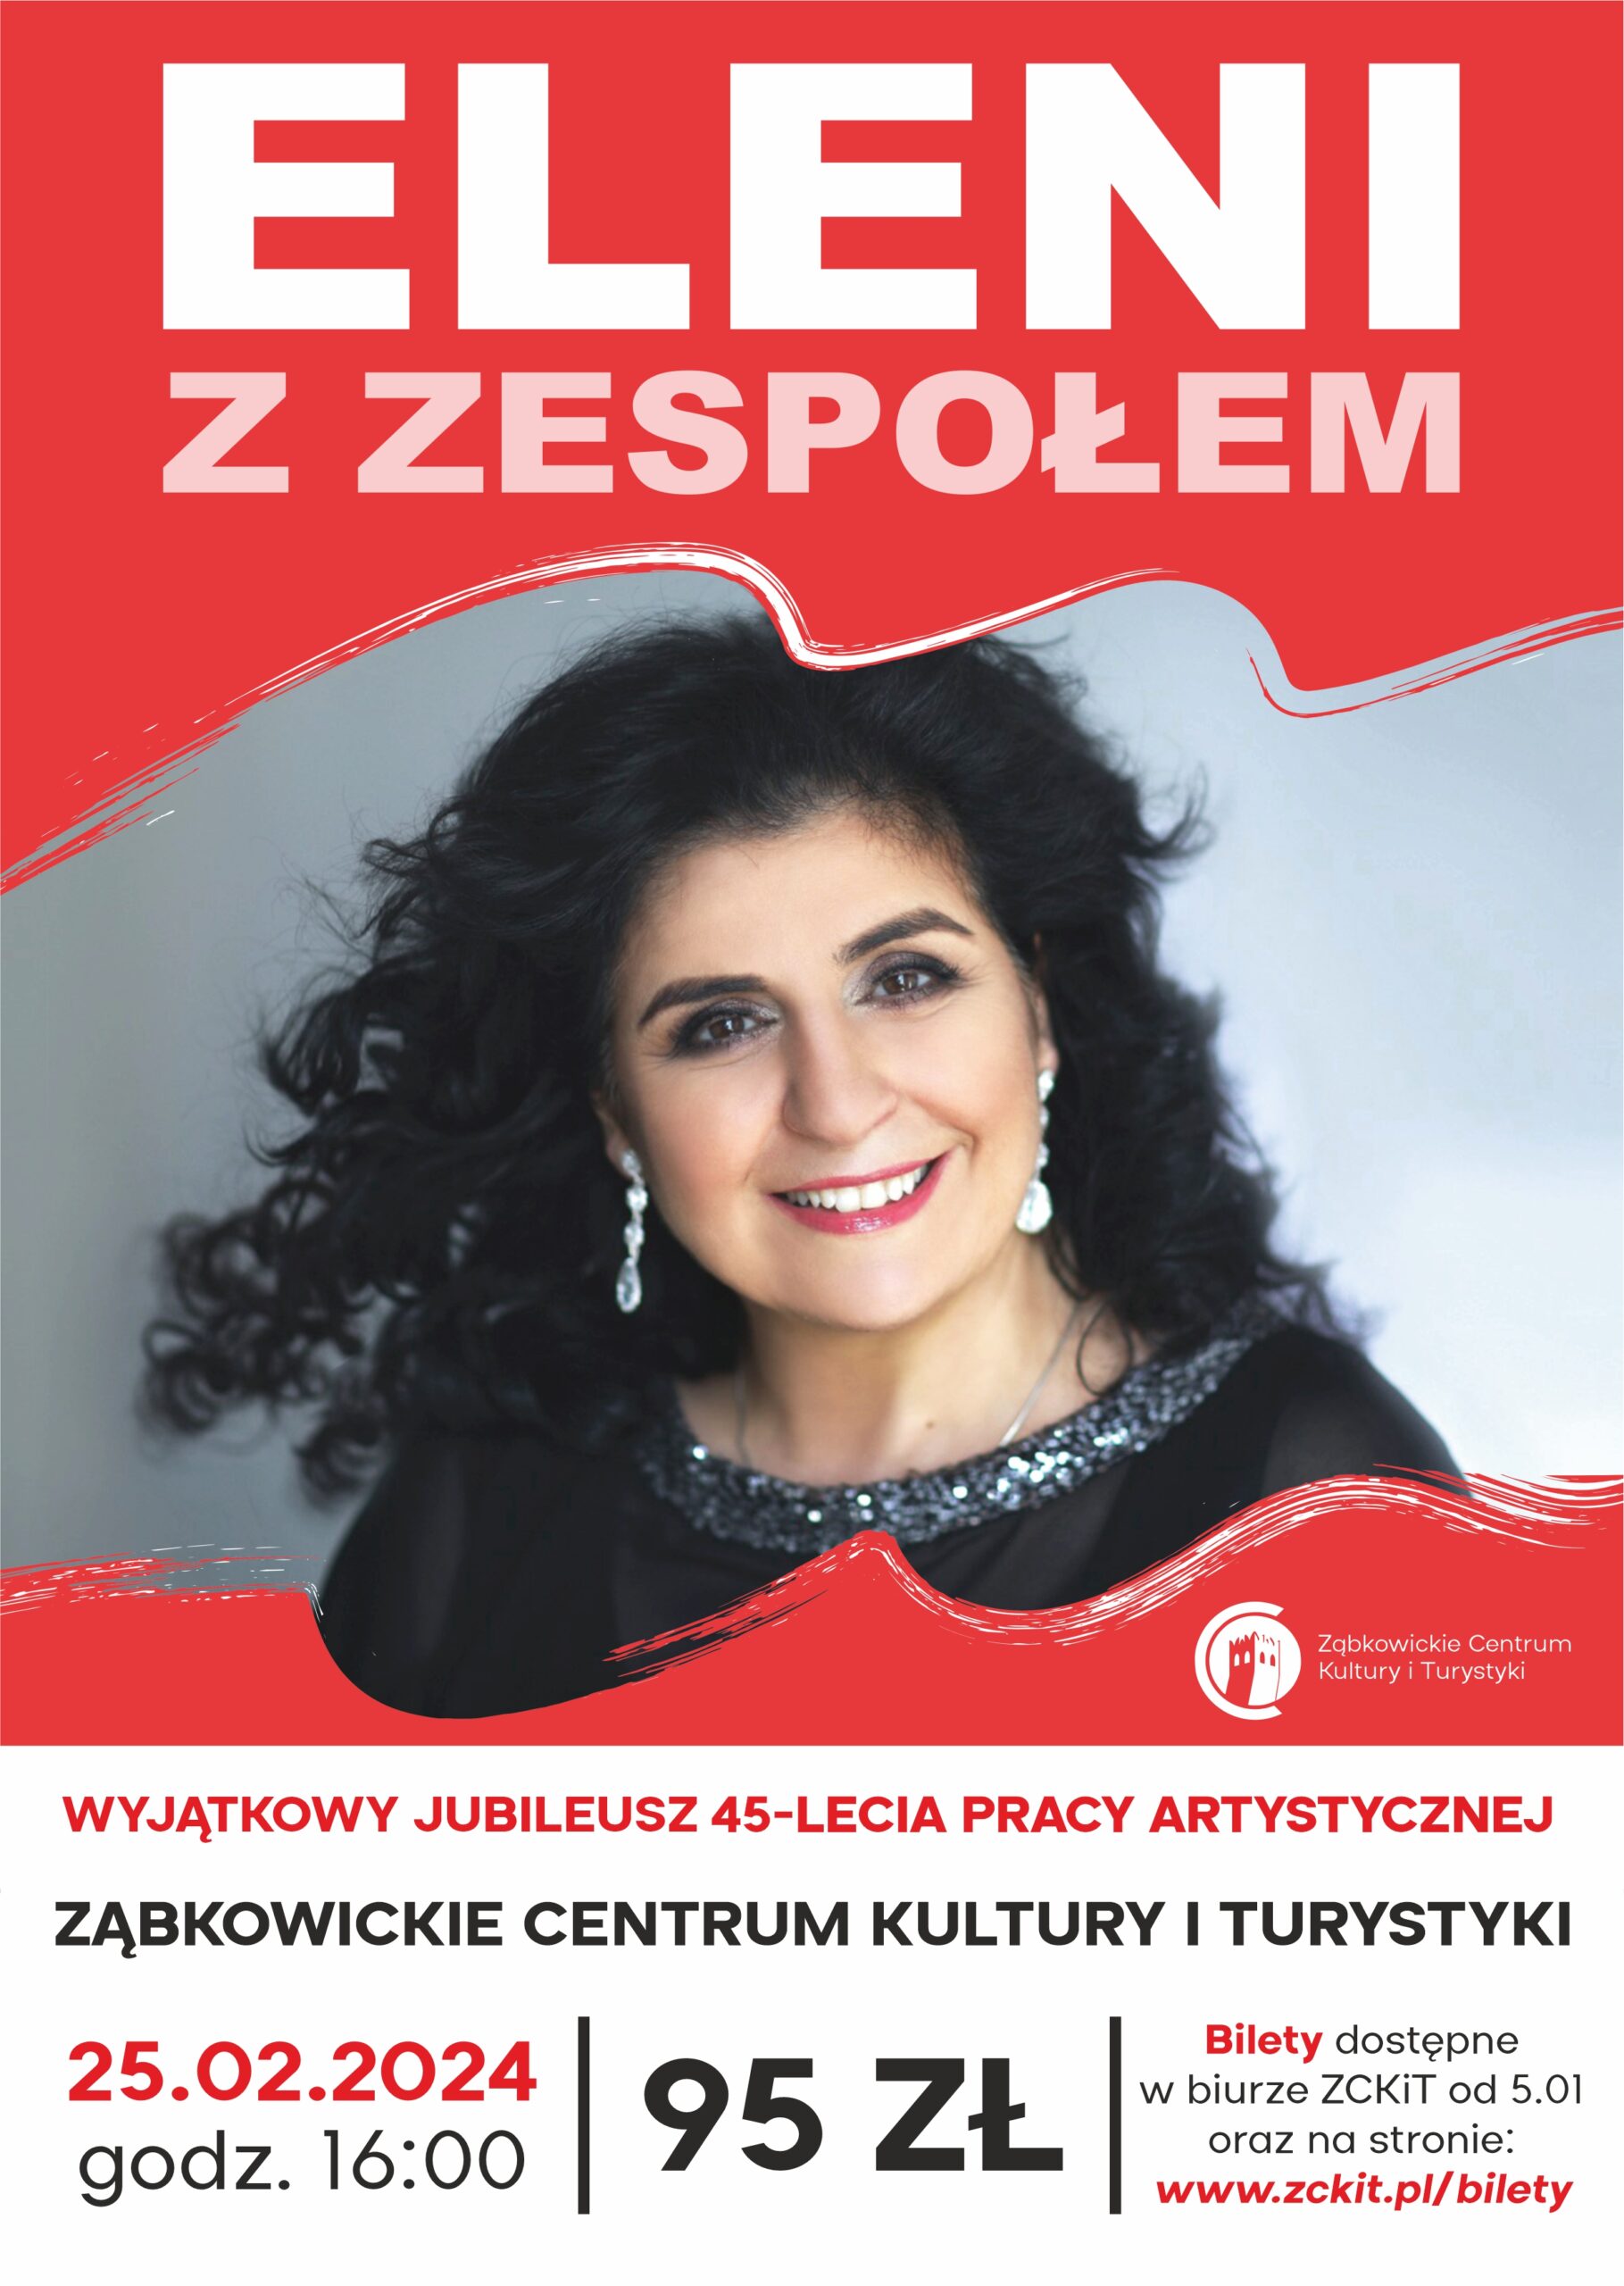 Plakat informacyjny o występie Eleni z zespołem w Ząbkowickim Centrum Kultury i Turystyki 25 lutego 2024 o godzinie 16:00. Na plakacie widnieje zdjęcie kobiety z czarnymi, kręconymi włosami w czarnej bluzce i białych kolczykach.